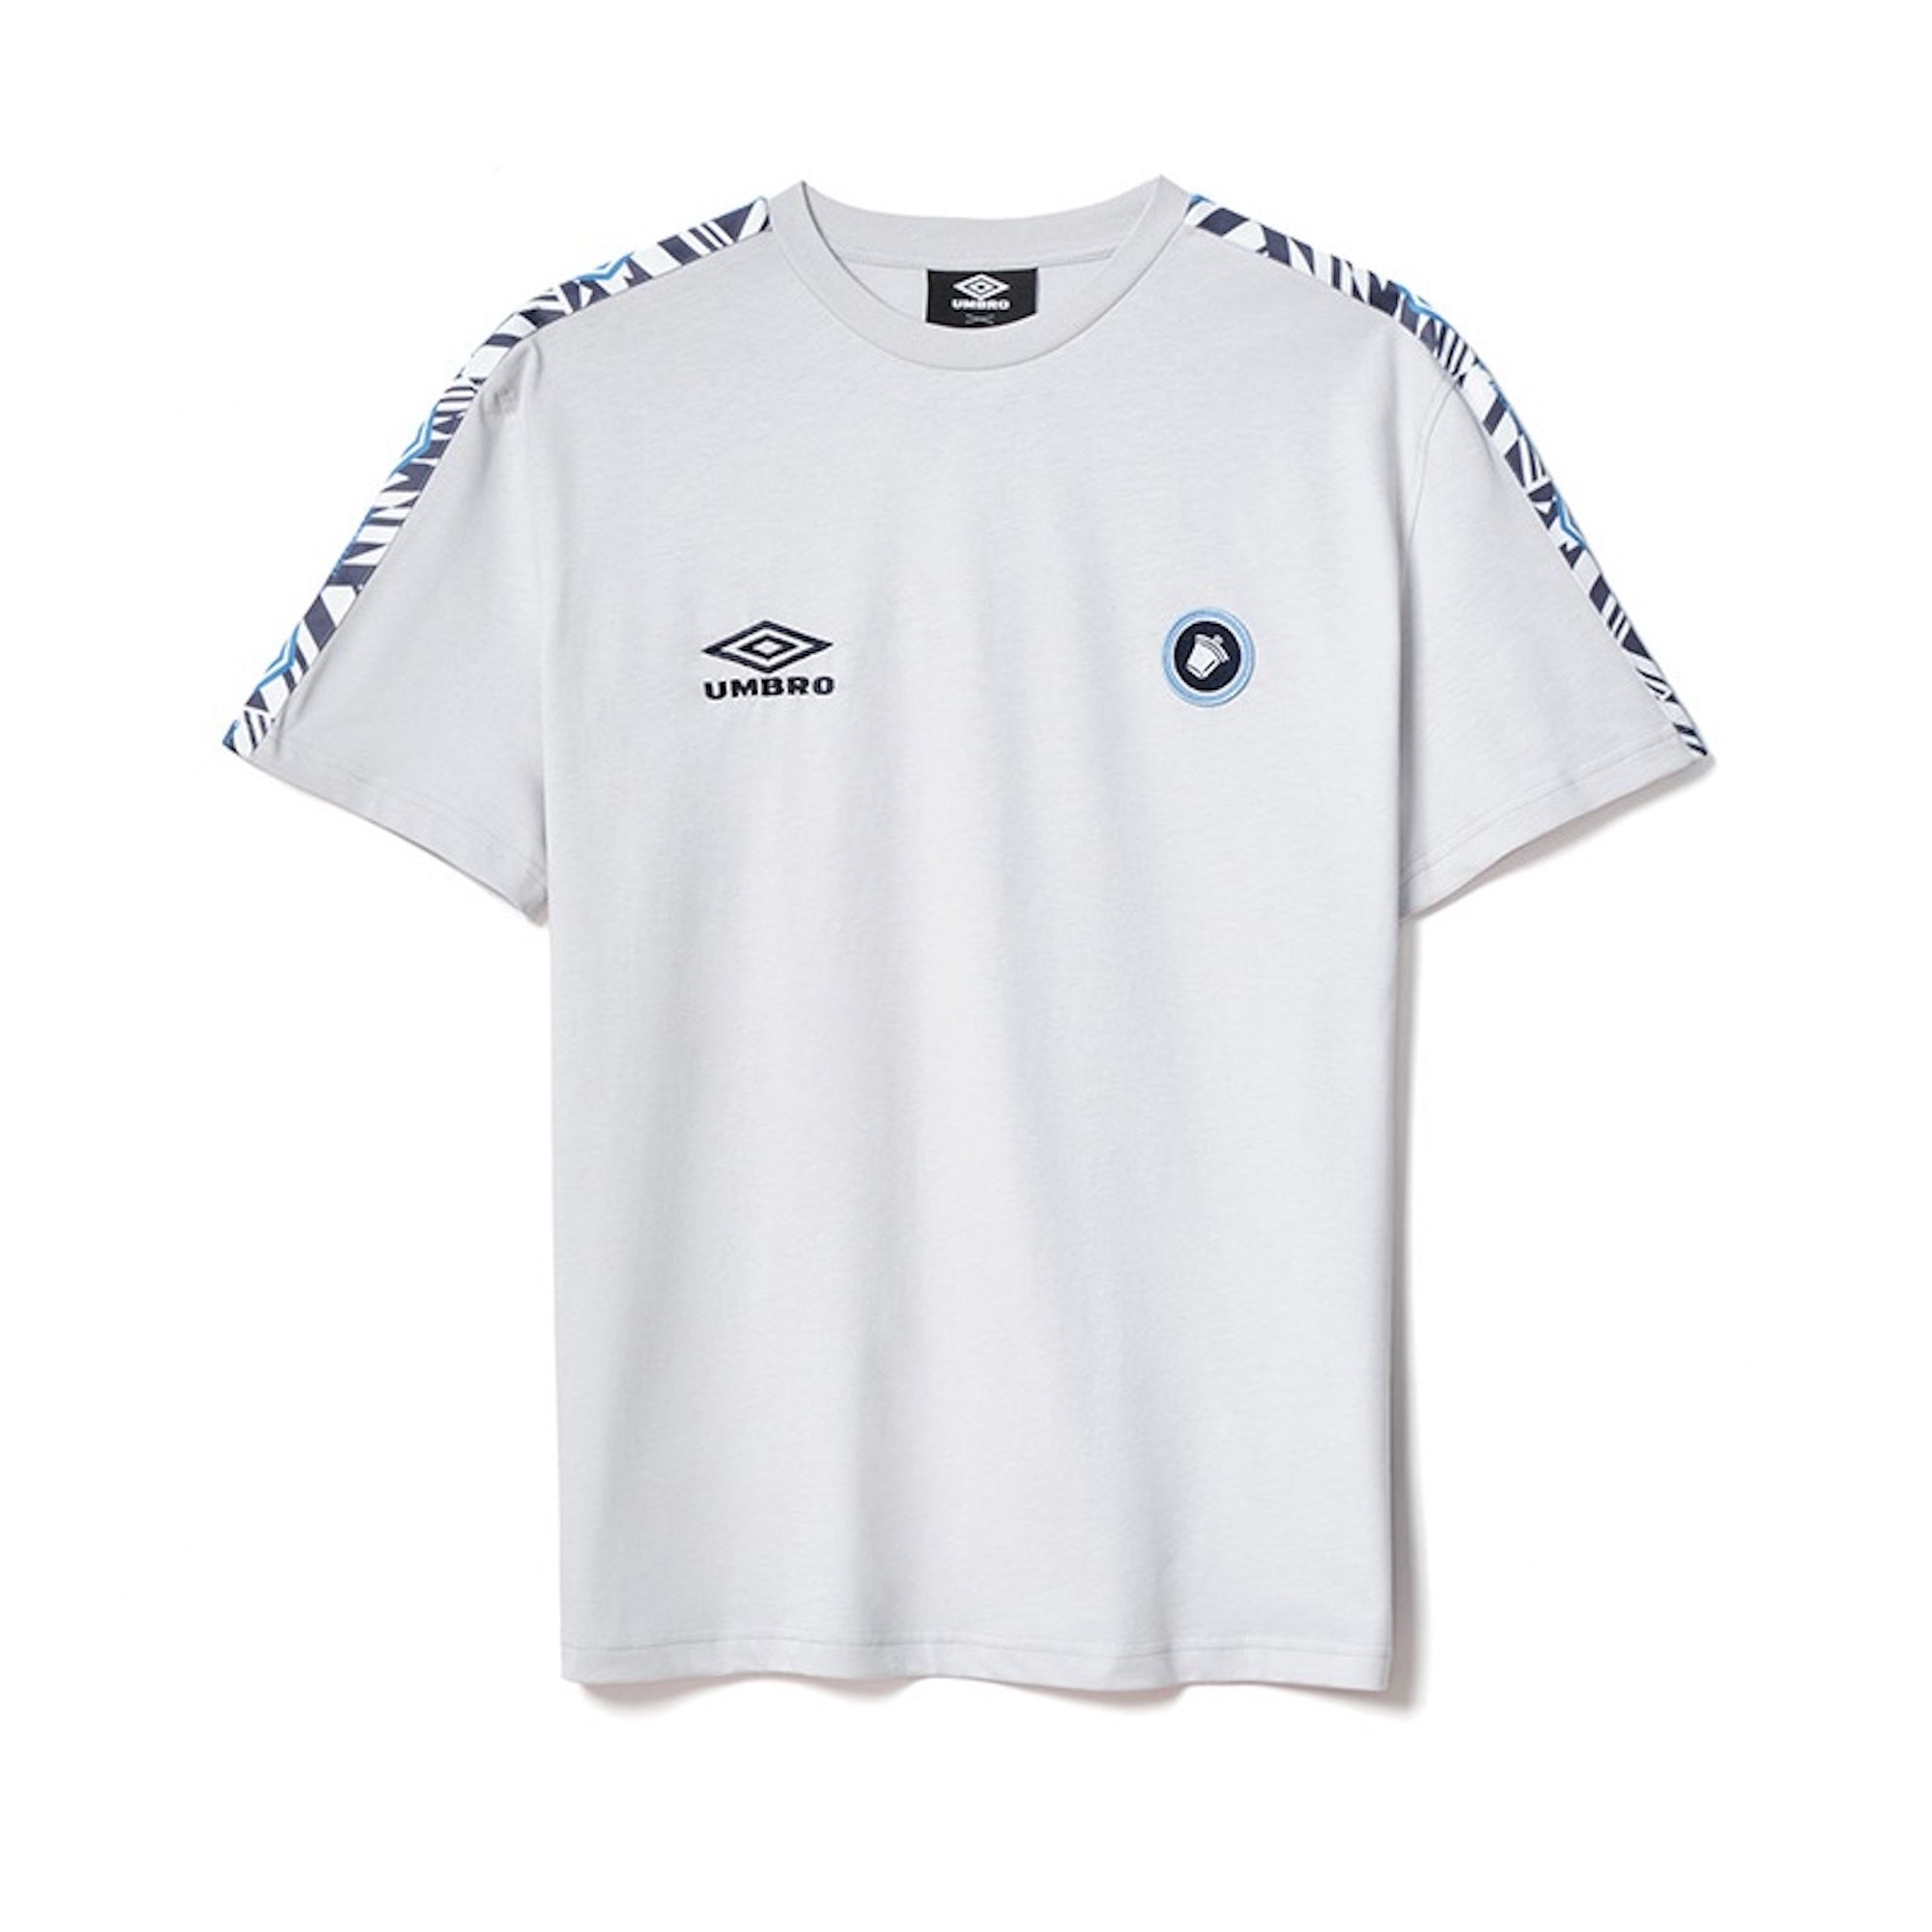 Umbro × Tacchettee Lazio T-shirt-GRAY